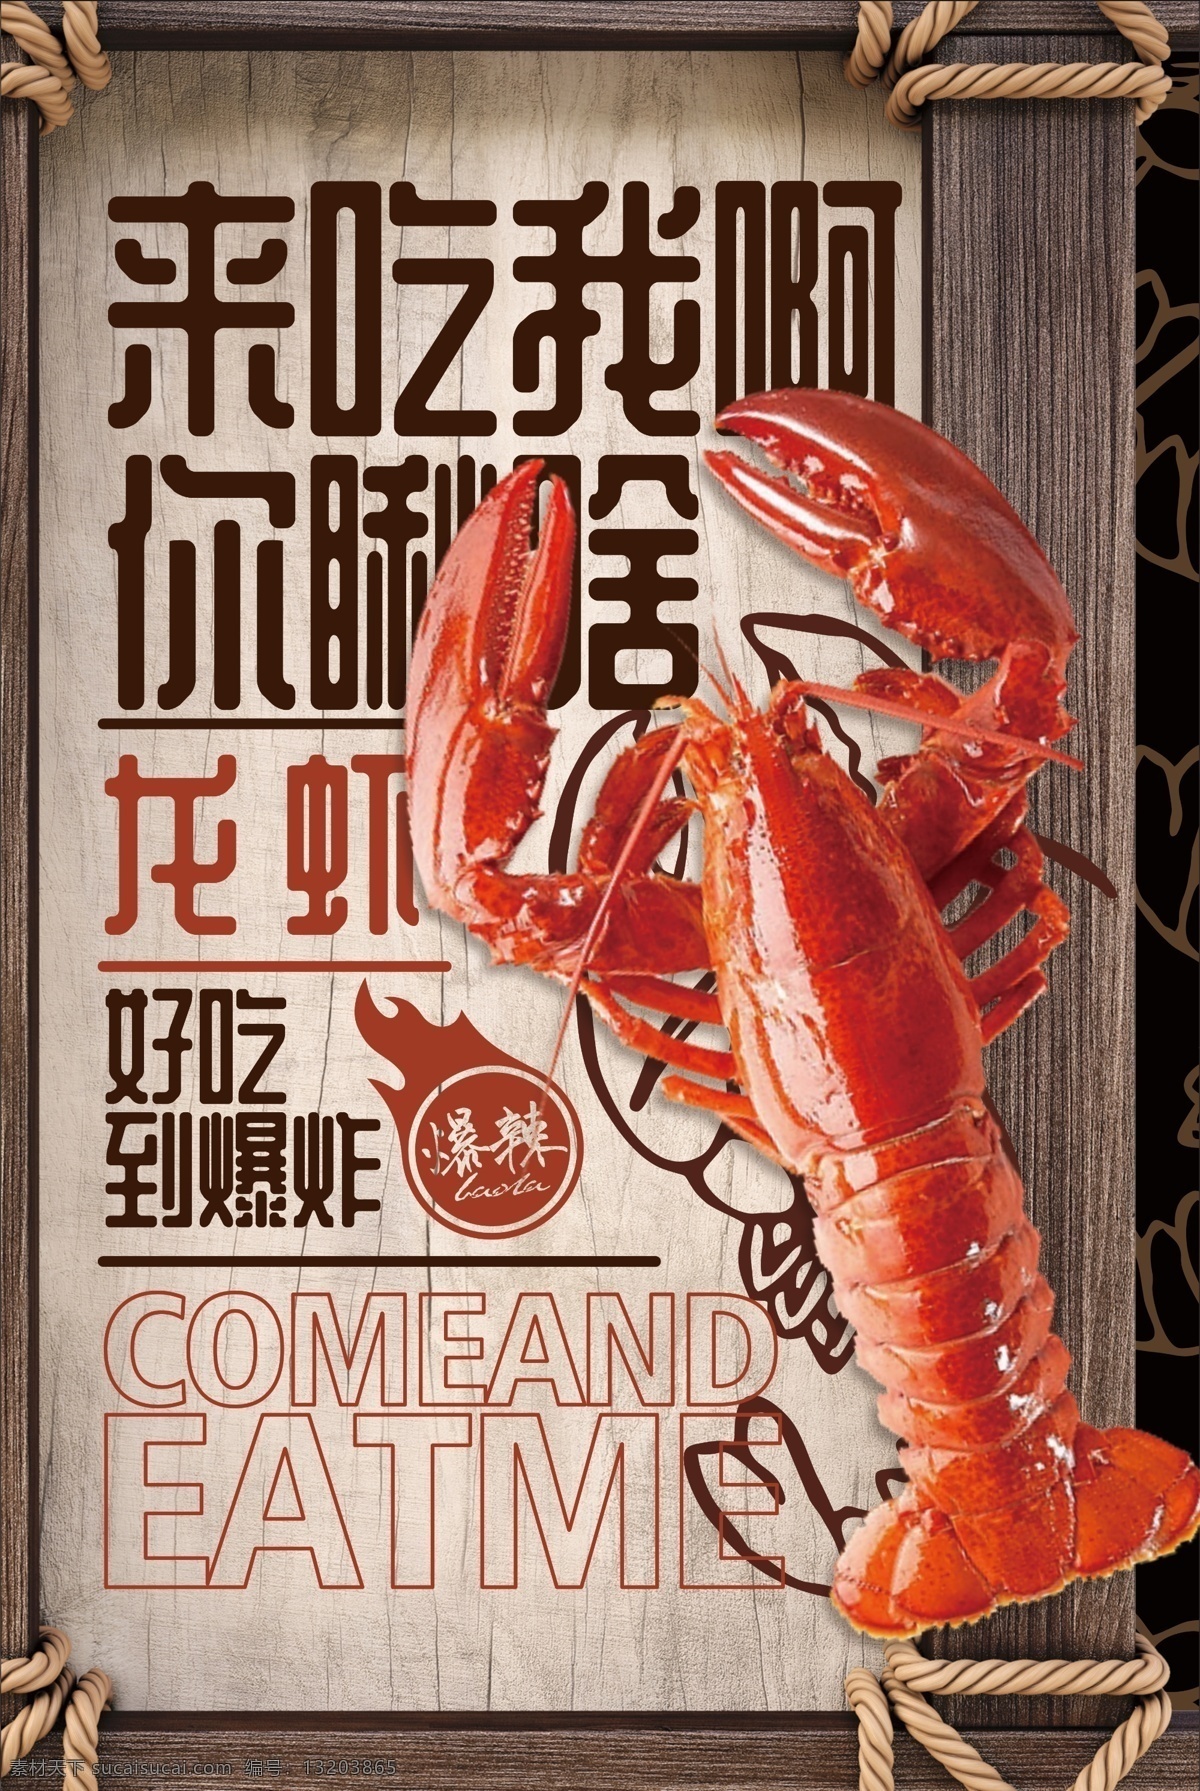 龙虾 海鲜 宣传单 海报 小龙虾 海产品 特产 小吃 夜宵 展架 展板